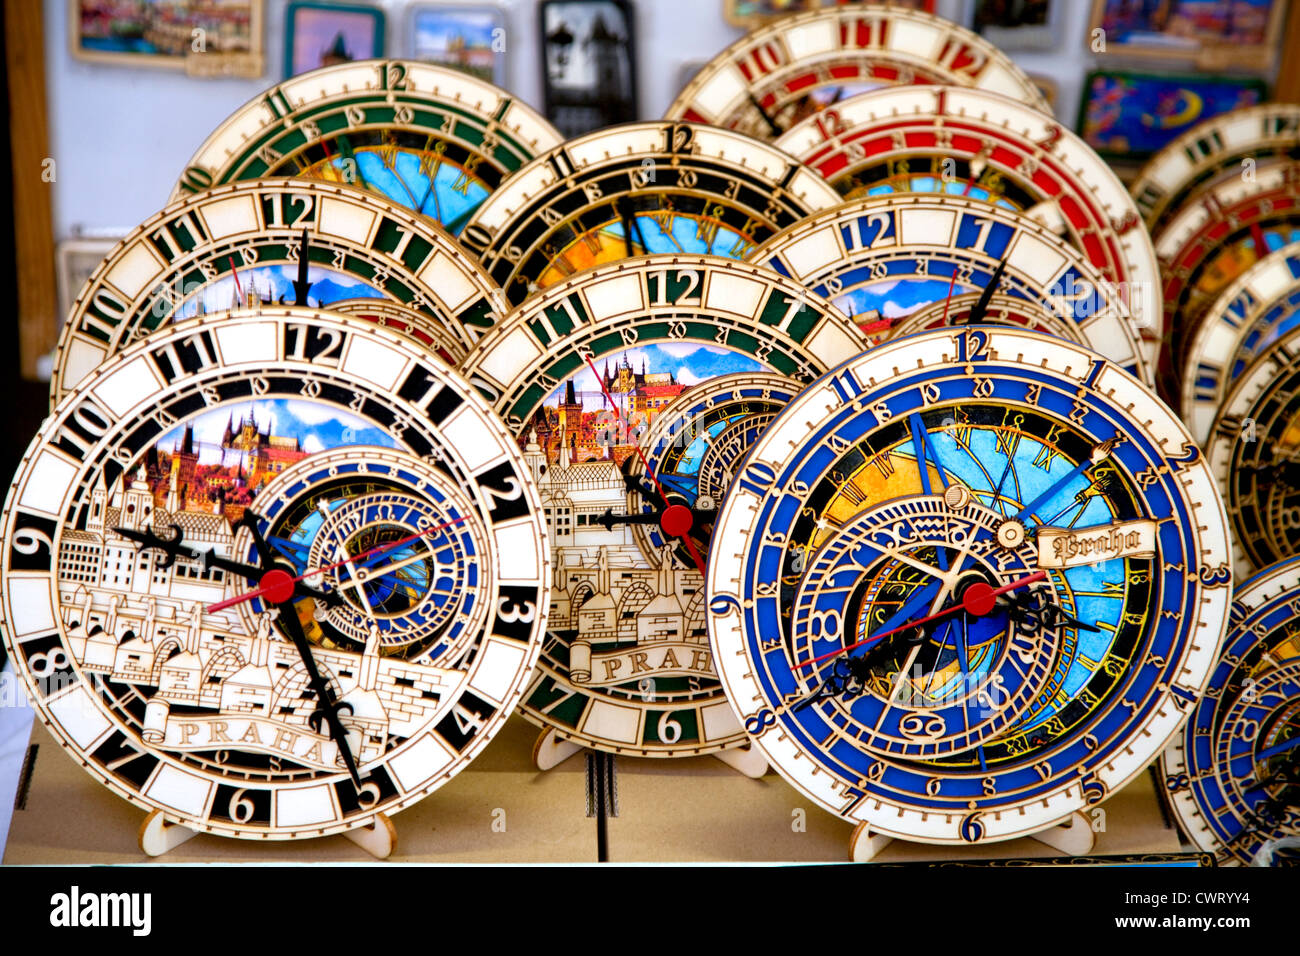 Miniatures de la célèbre horloge astronomique de Prague sont vendus comme souvenirs dans un grand nombre de boutiques de la vieille ville de Prague. Usage éditorial uniquement. Banque D'Images